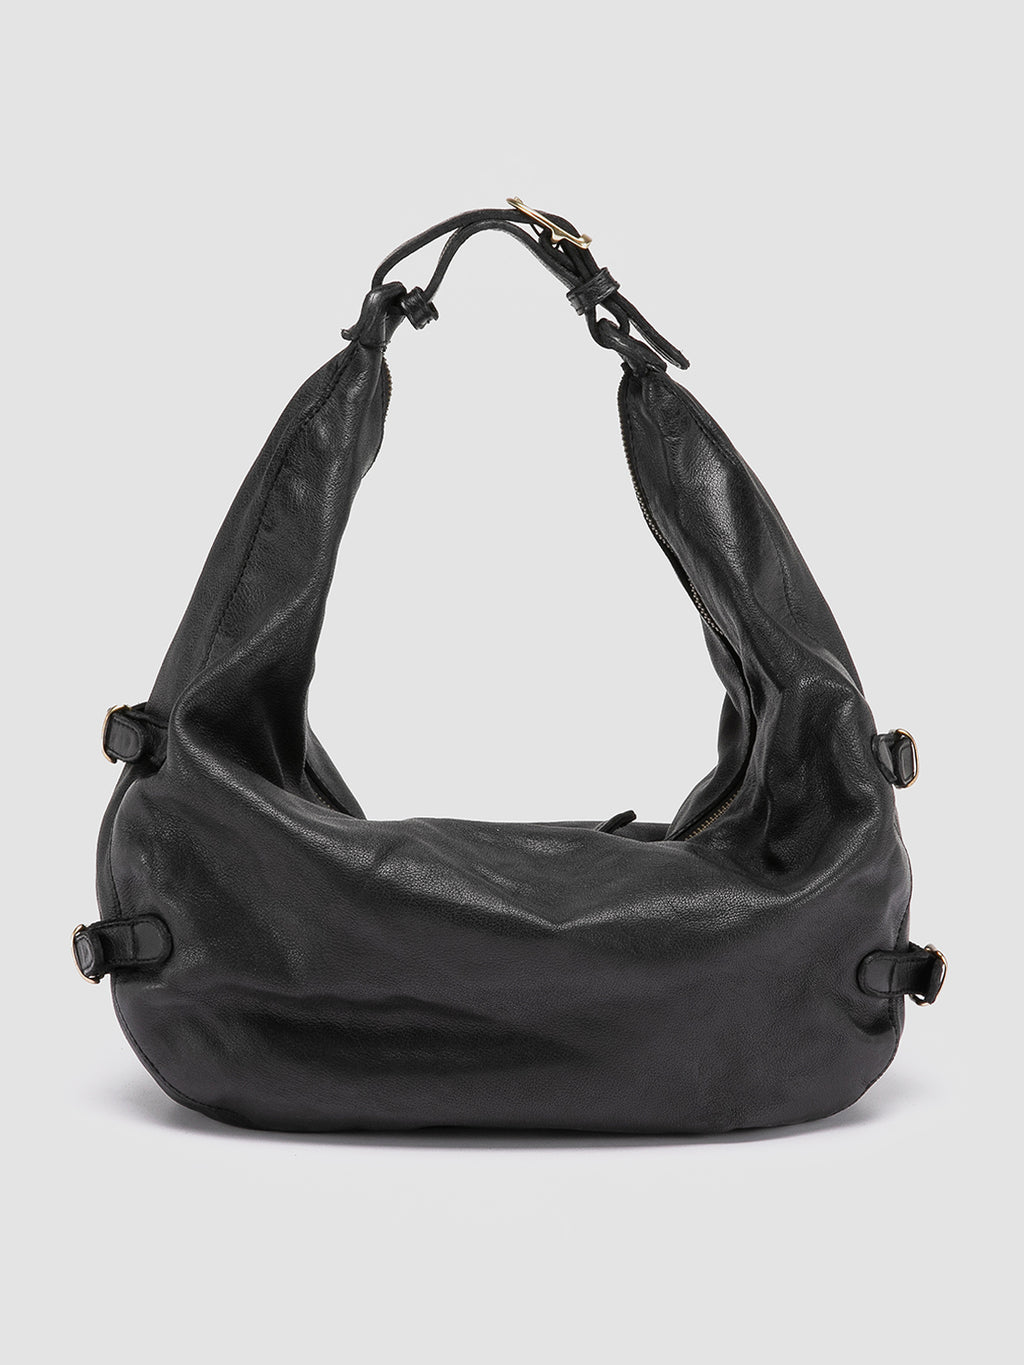 JULIE 008 - Black Leather Shoulder Bag